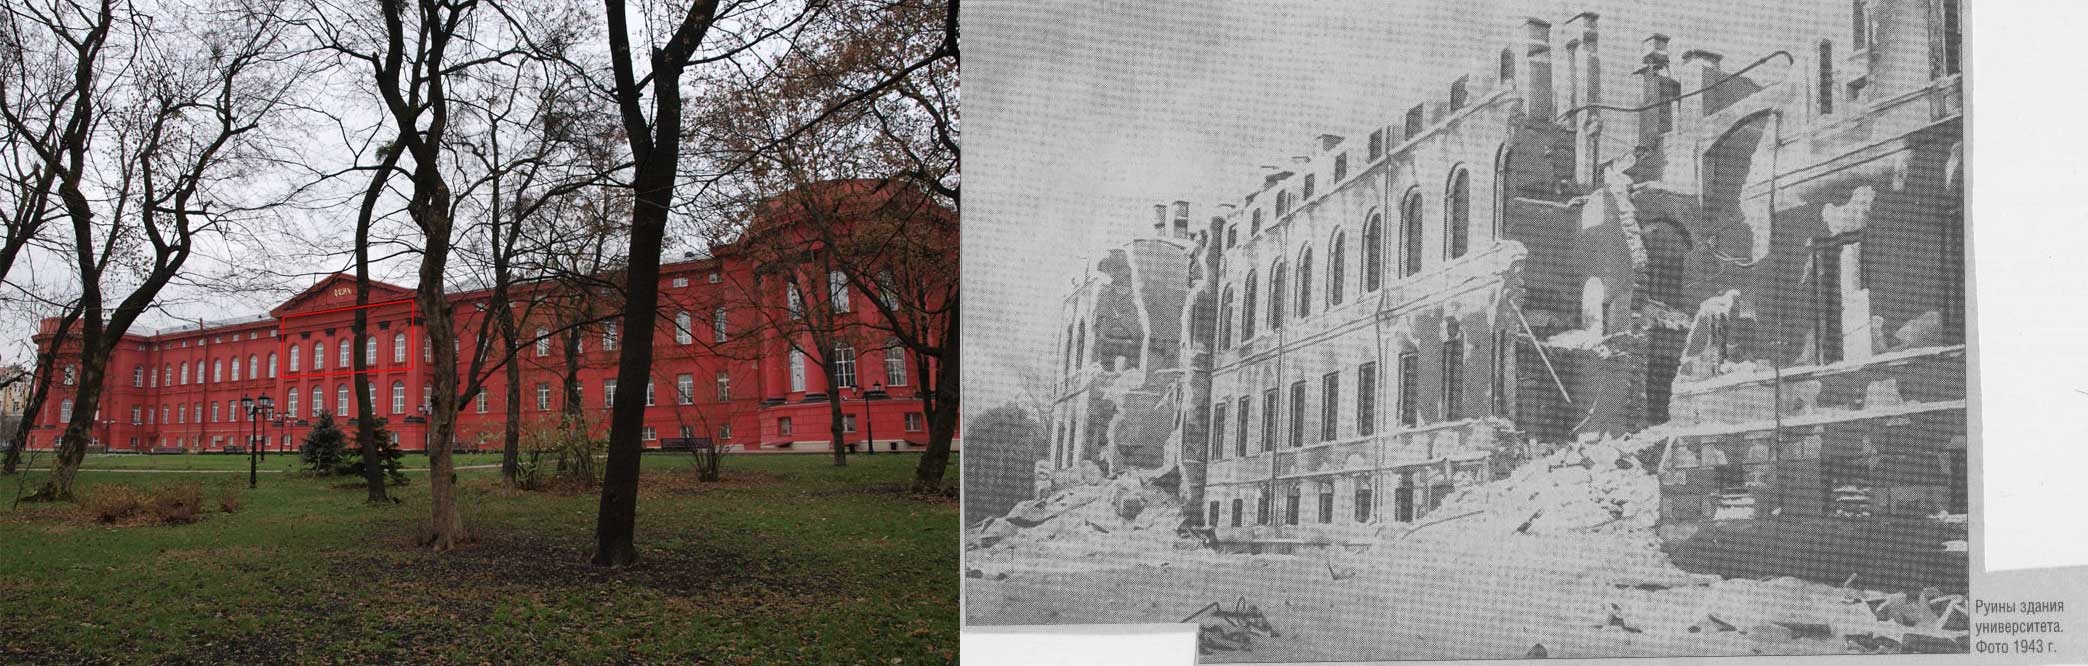 Здание главного корпуса Киевского университета в 1943 году было серьезно повреждено. Фото: cdiak.archives.gov.ua